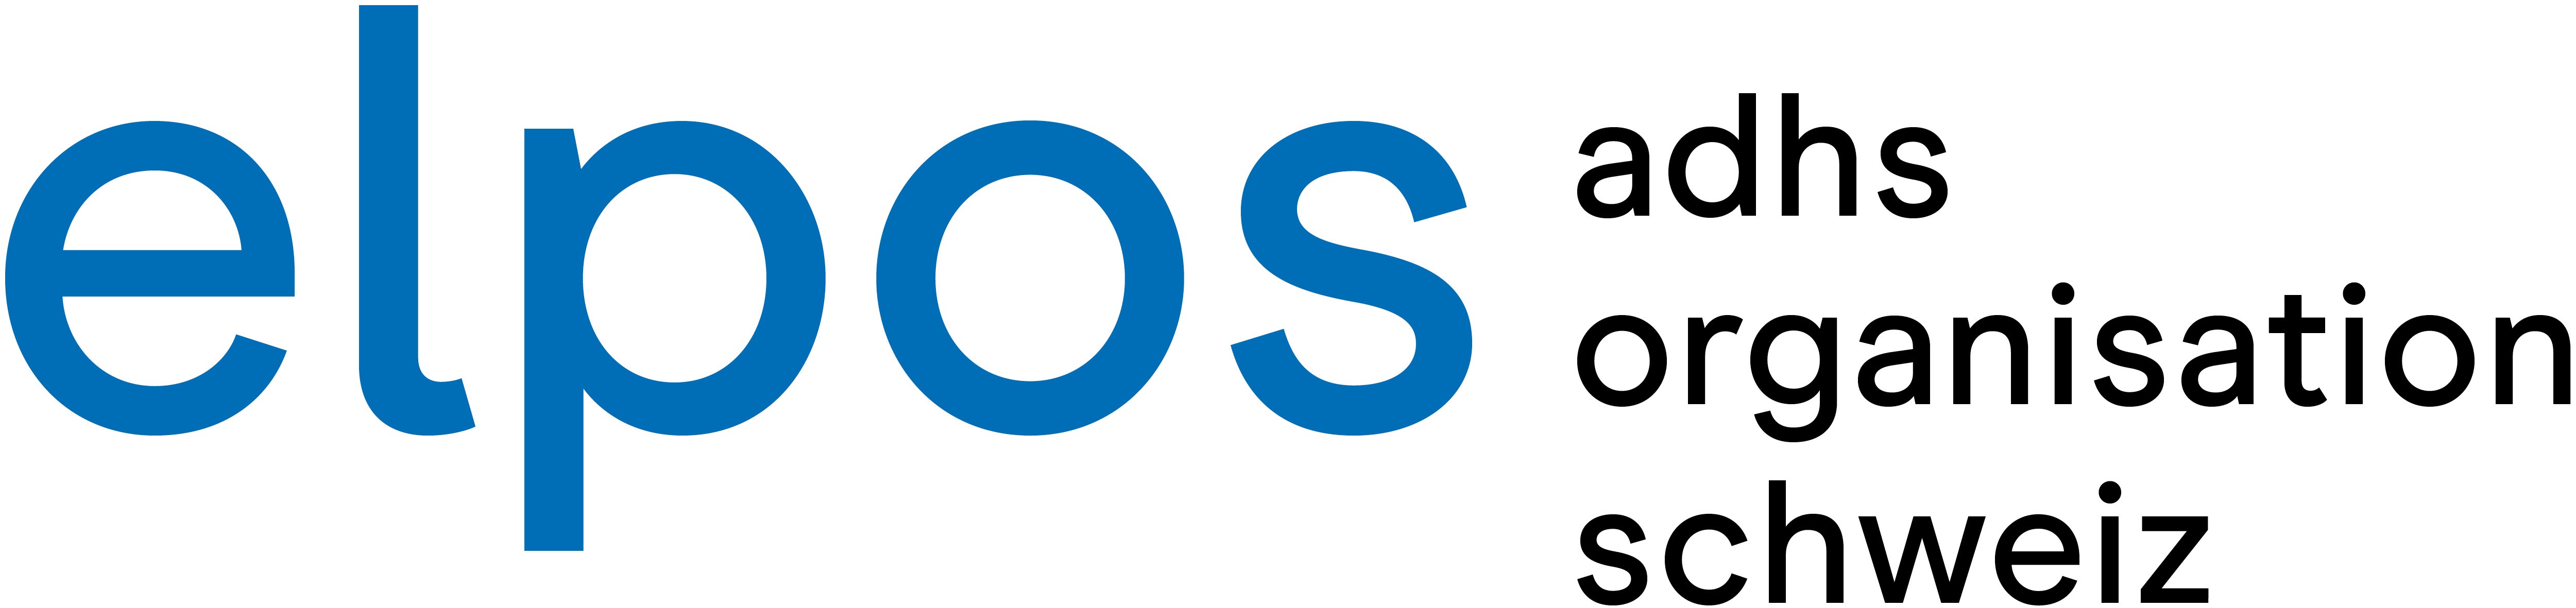 Logo - elpos ADHS Organisation Schweiz